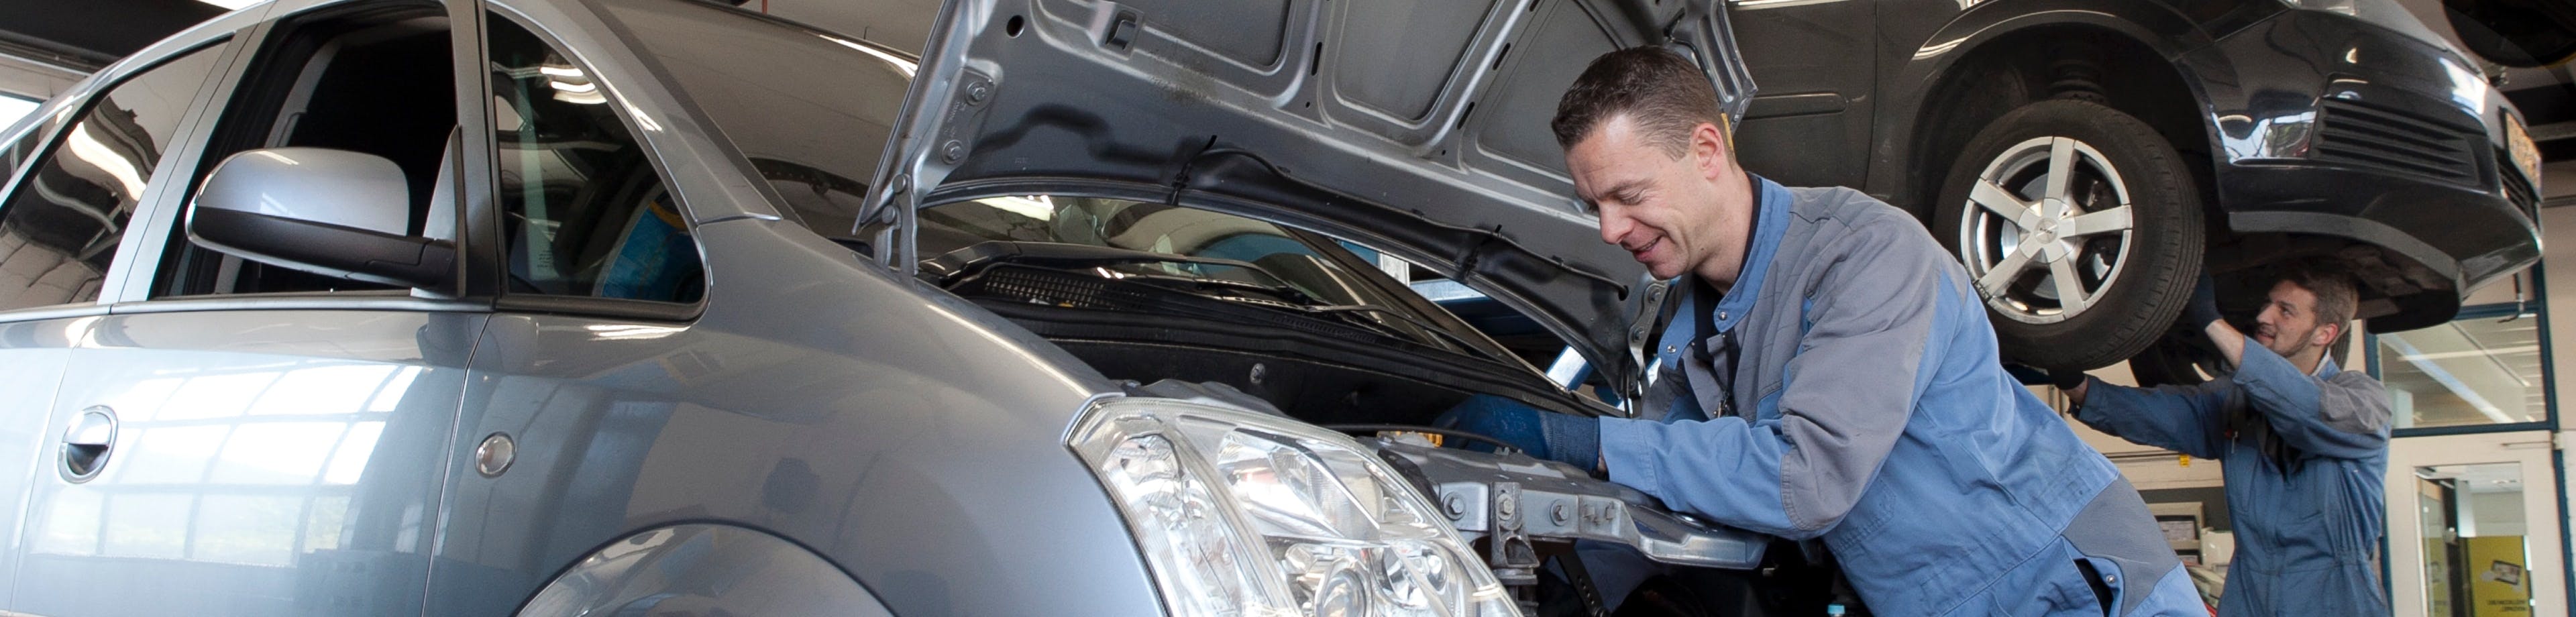 Een werknemer van een garage sleutelt aan een auto. Met de Klantvoertuigenverzekering verzekert u schade aan of door voertuigen van klanten die u repareert of bewerkt.